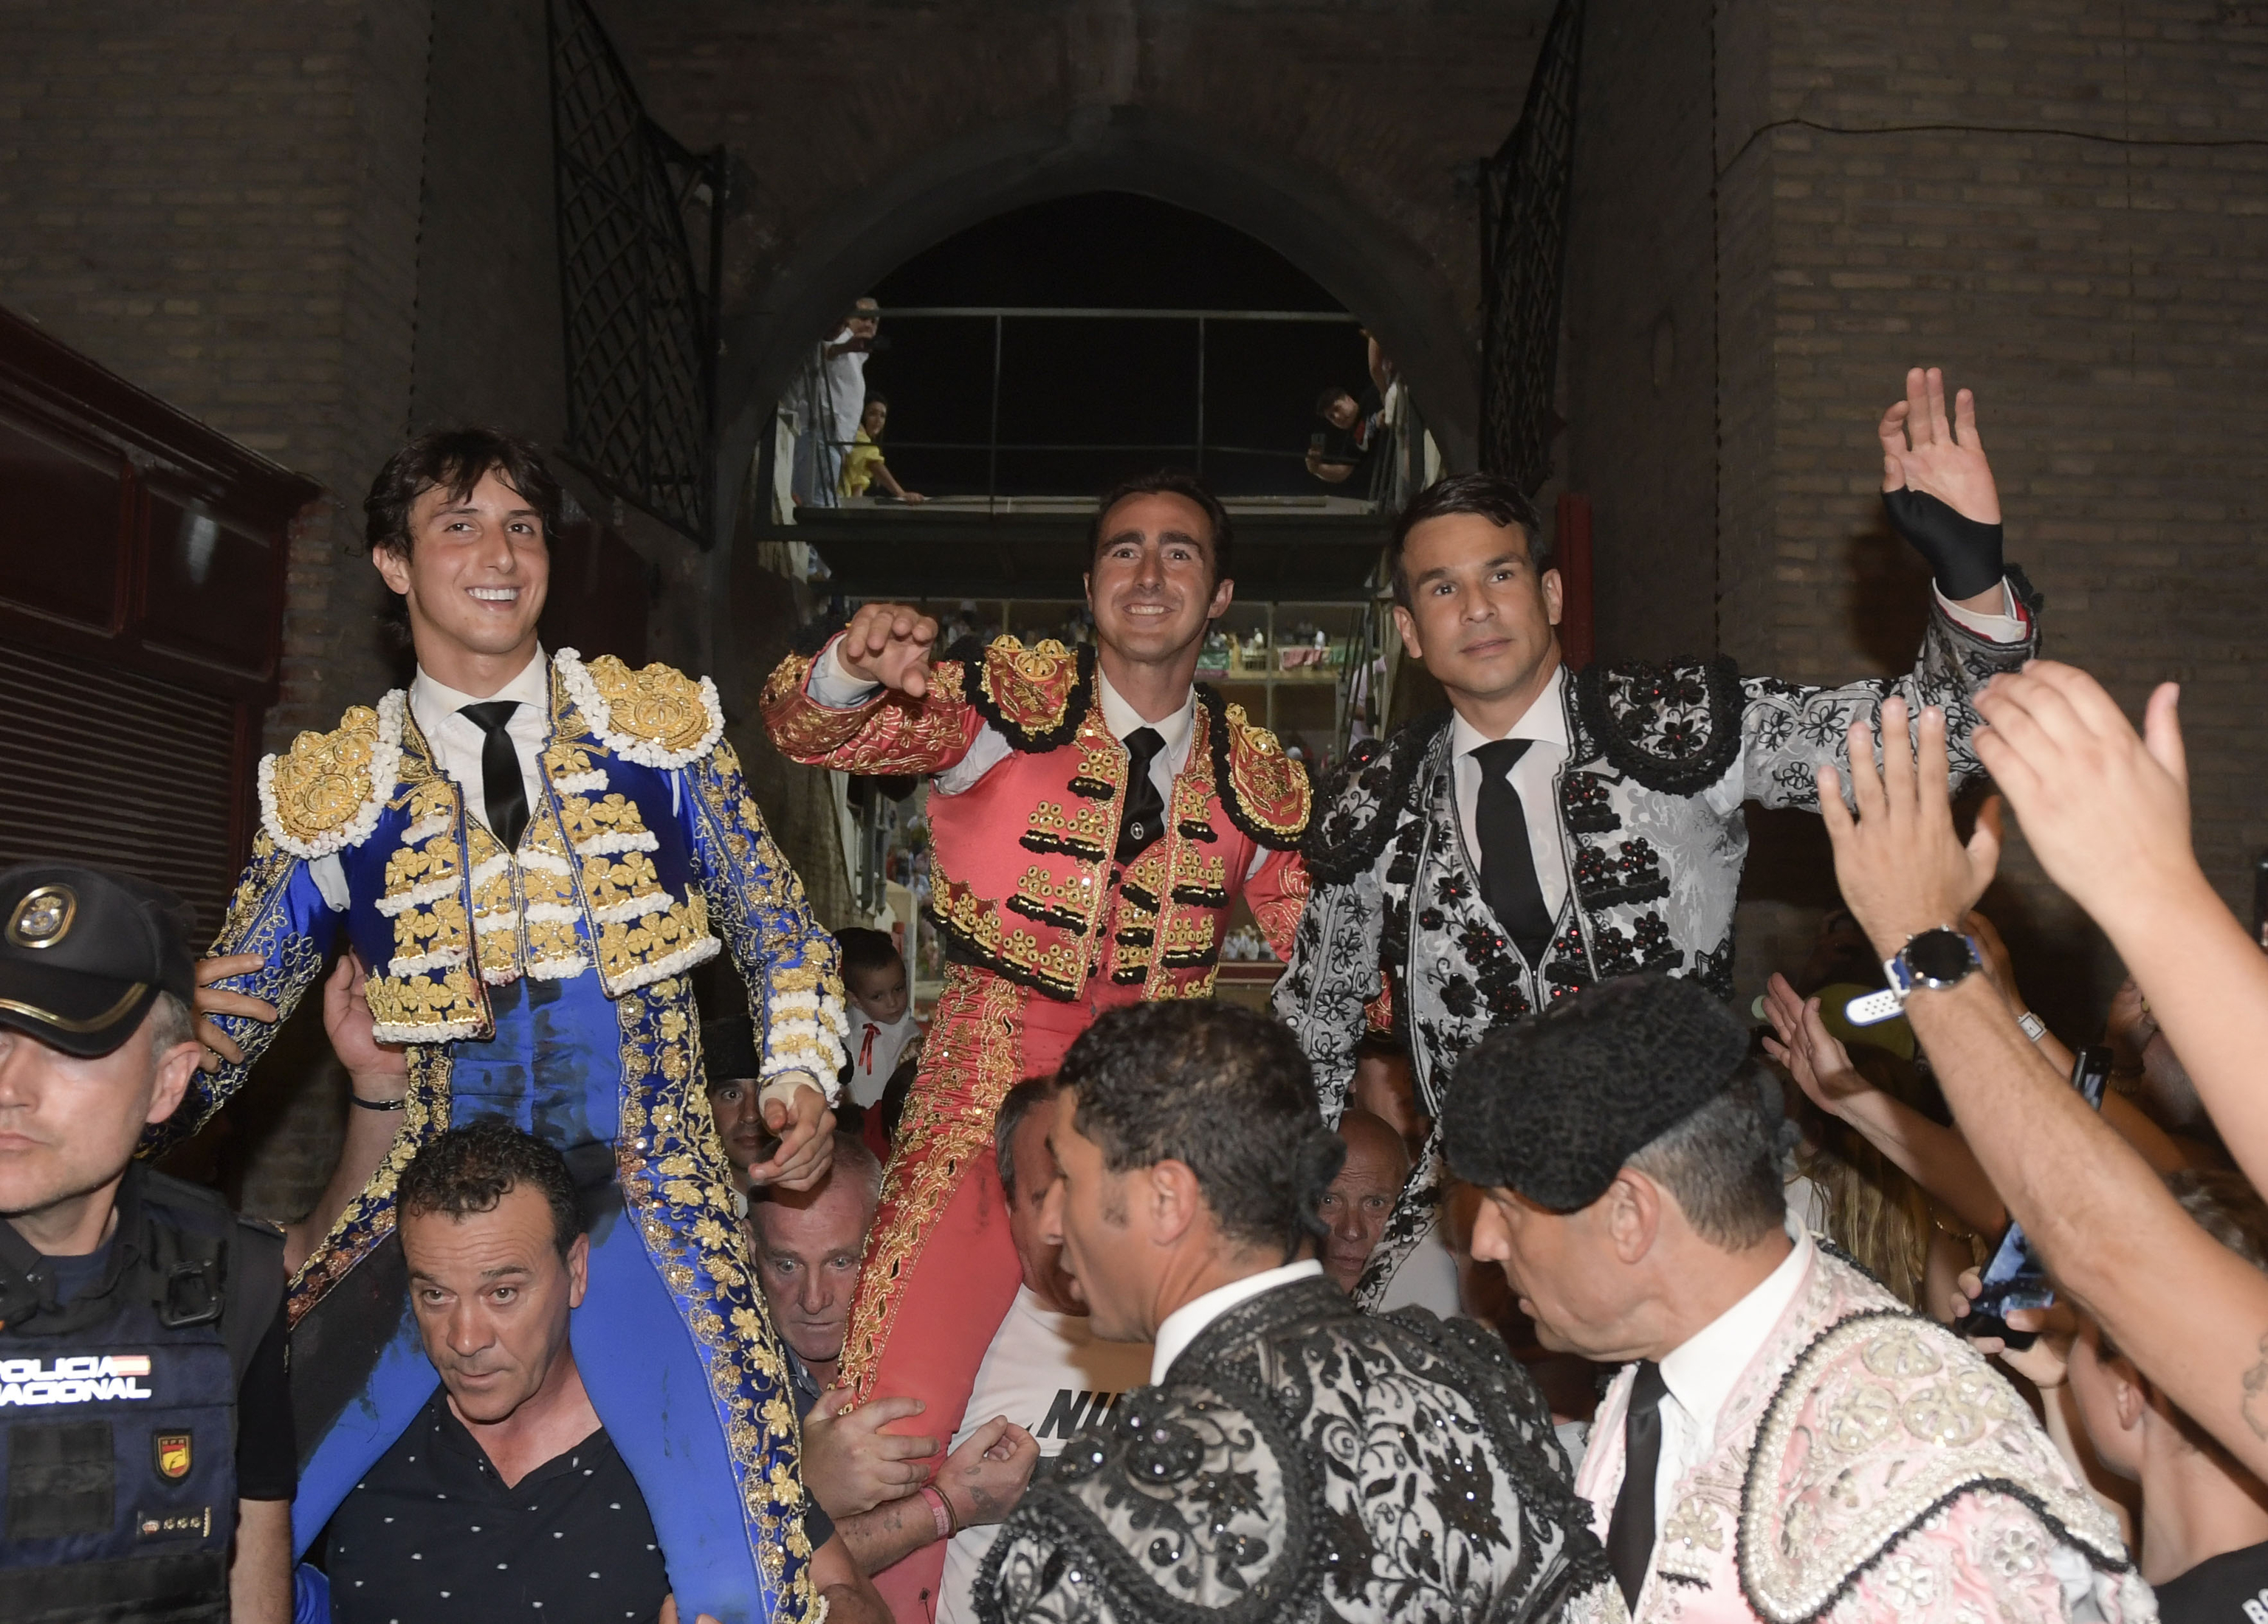 El Fandi, Manzanares y Roca Rey firman un triunfal inicio de Granada